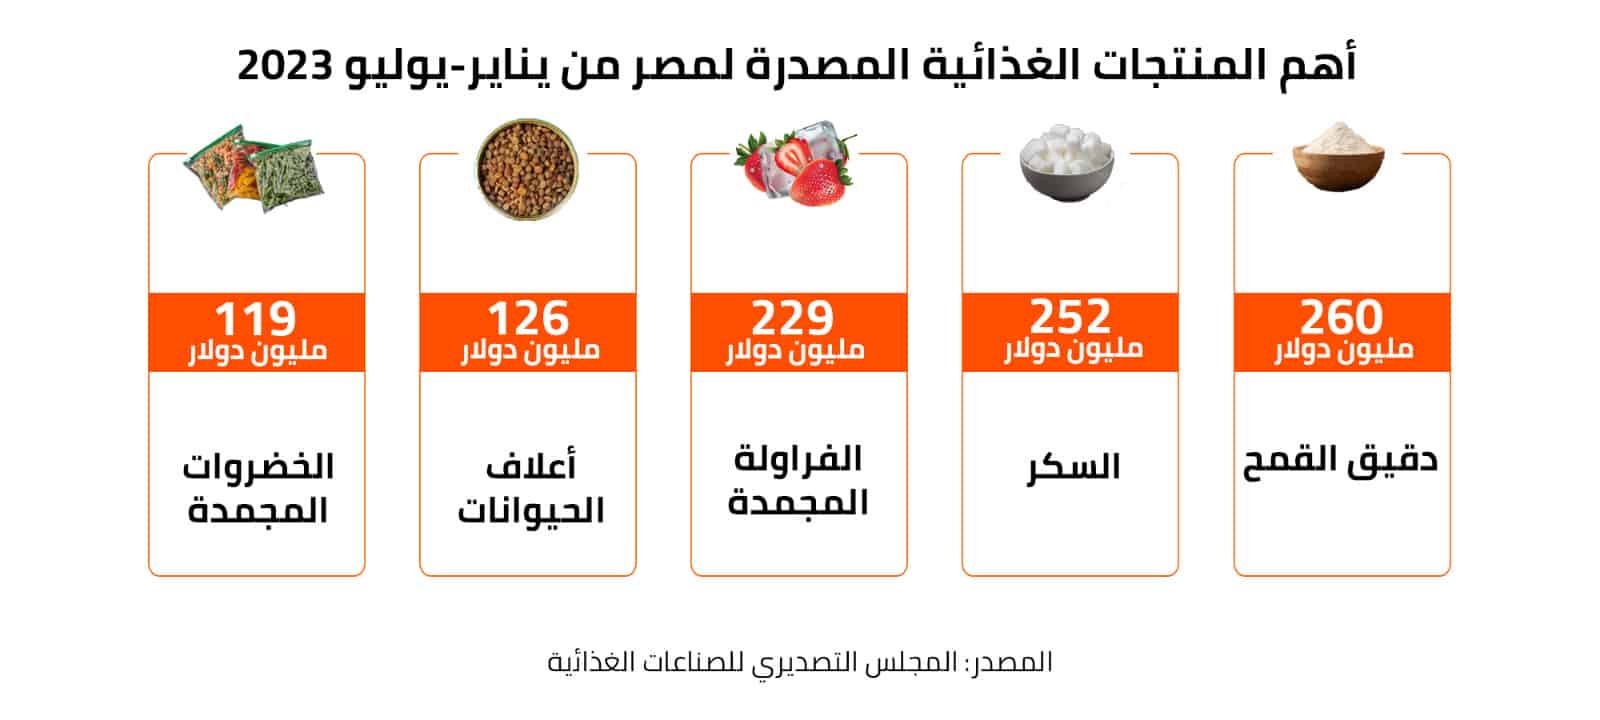 أهم المنتجات الغذائية المصدرة لمصر من يناير- يوليو 2023 